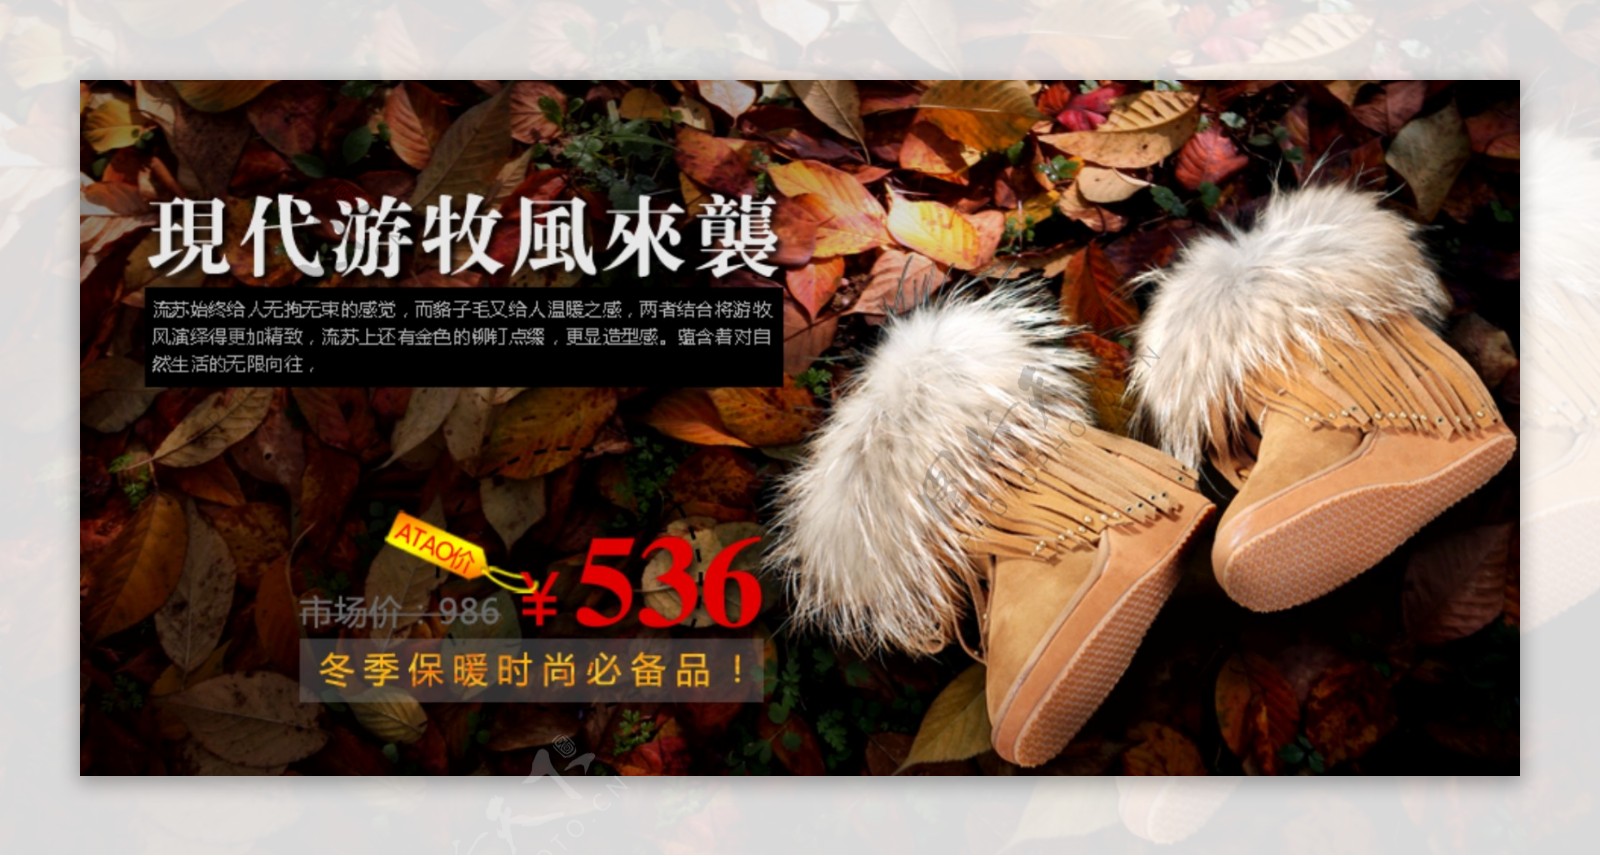 冬天棉鞋网页广告图片